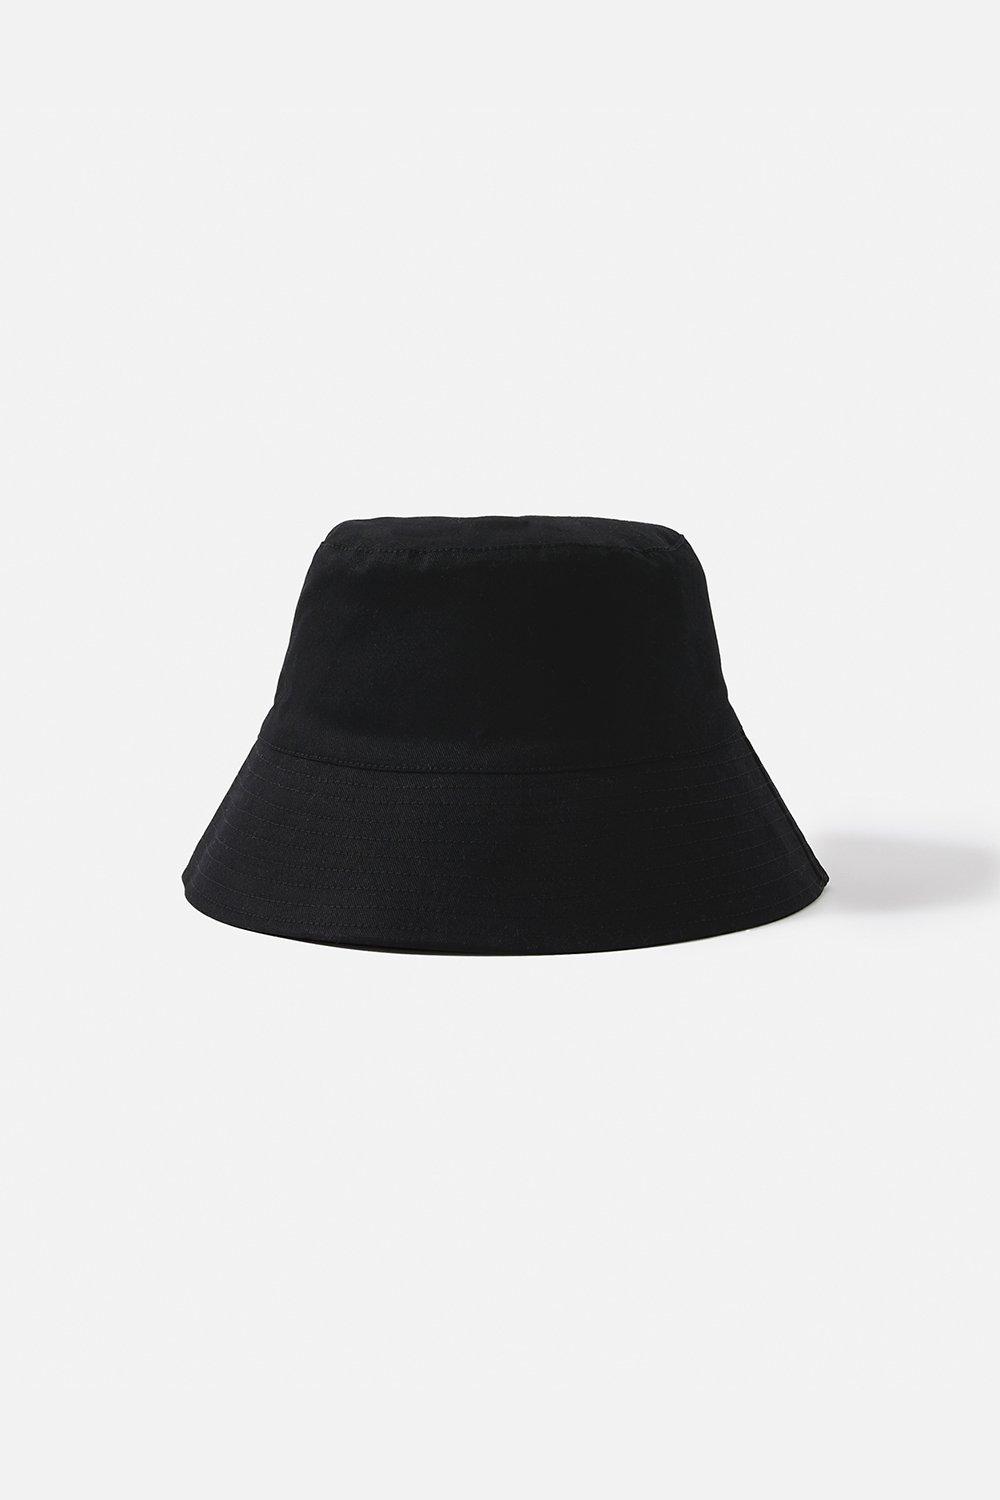 Accessorize Women's Bucket Hat|black